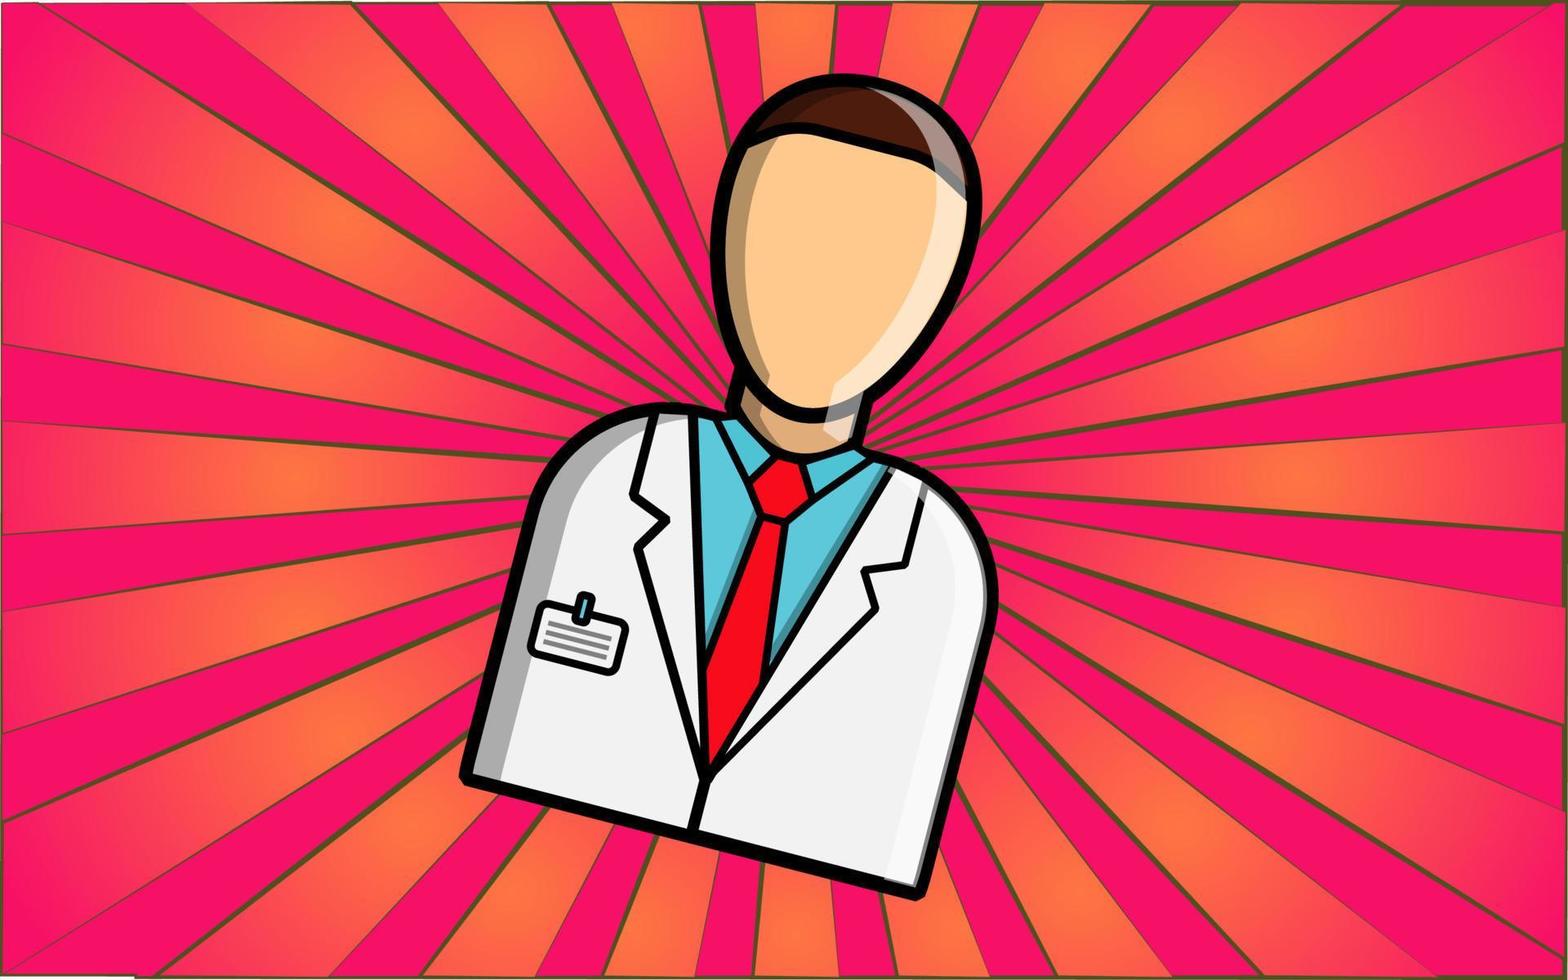 empleado médico trabajador de la salud médico hombre con bata blanca sobre fondo abstracto de rayos rojos. ilustración vectorial vector